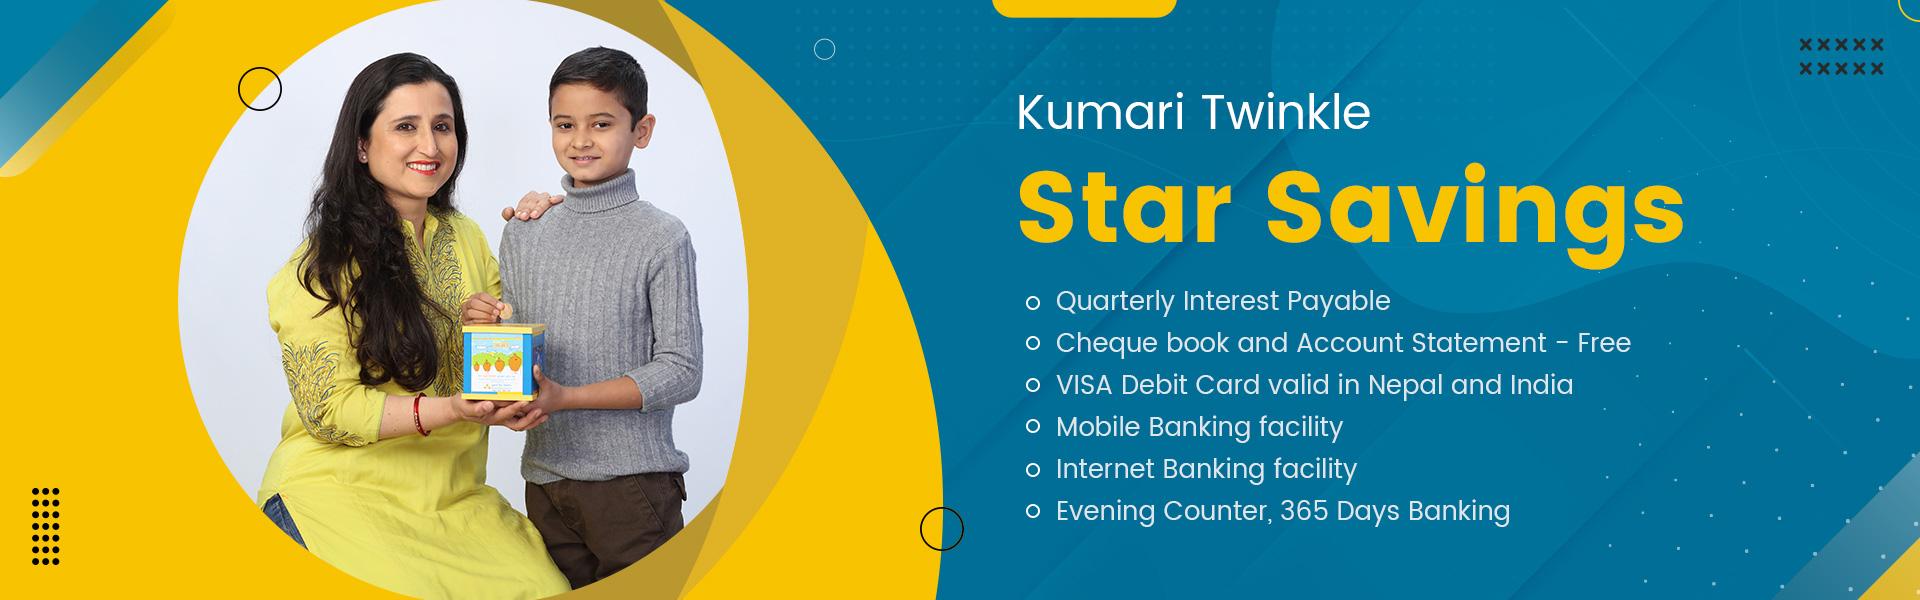 kumari-twinkle-star-savings